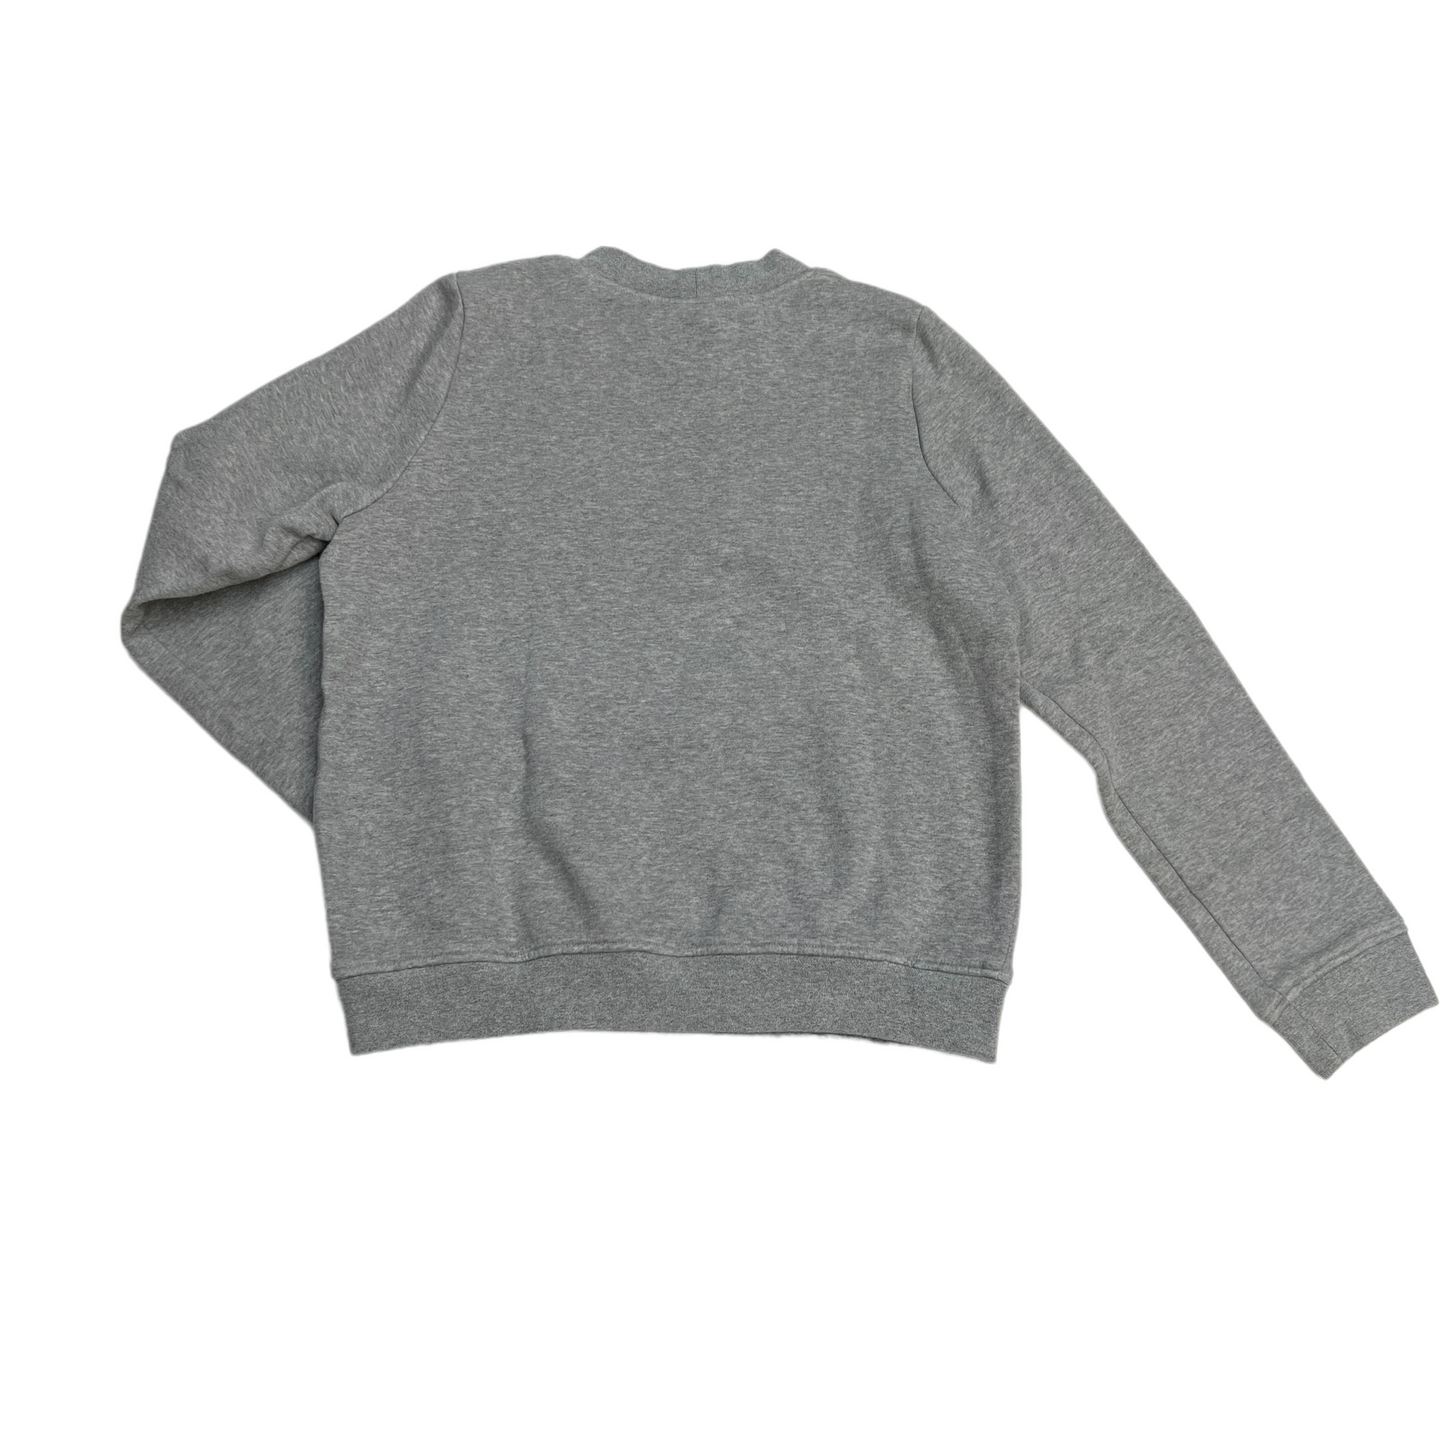 Grey Sweatshirt - XS